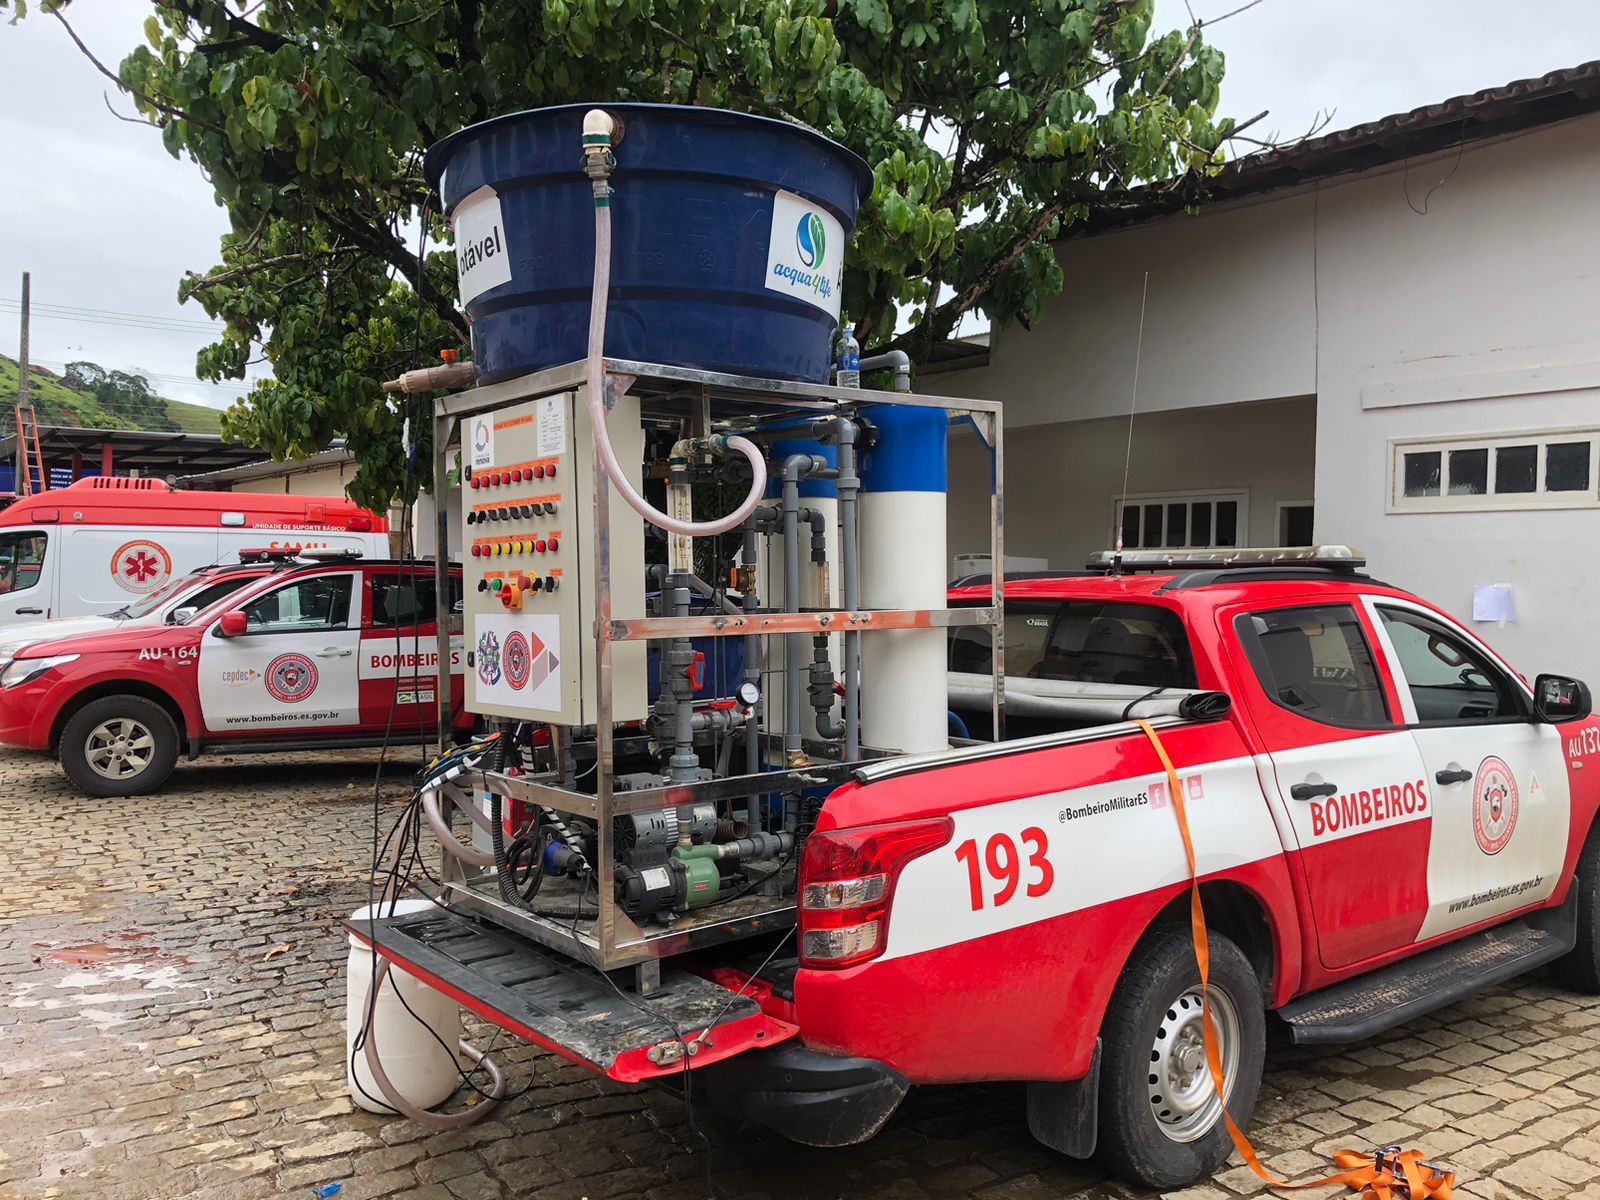 ES envia estações móveis de tratamento de água ao Rio Grande do Sul para ajudar vítimas da chuva